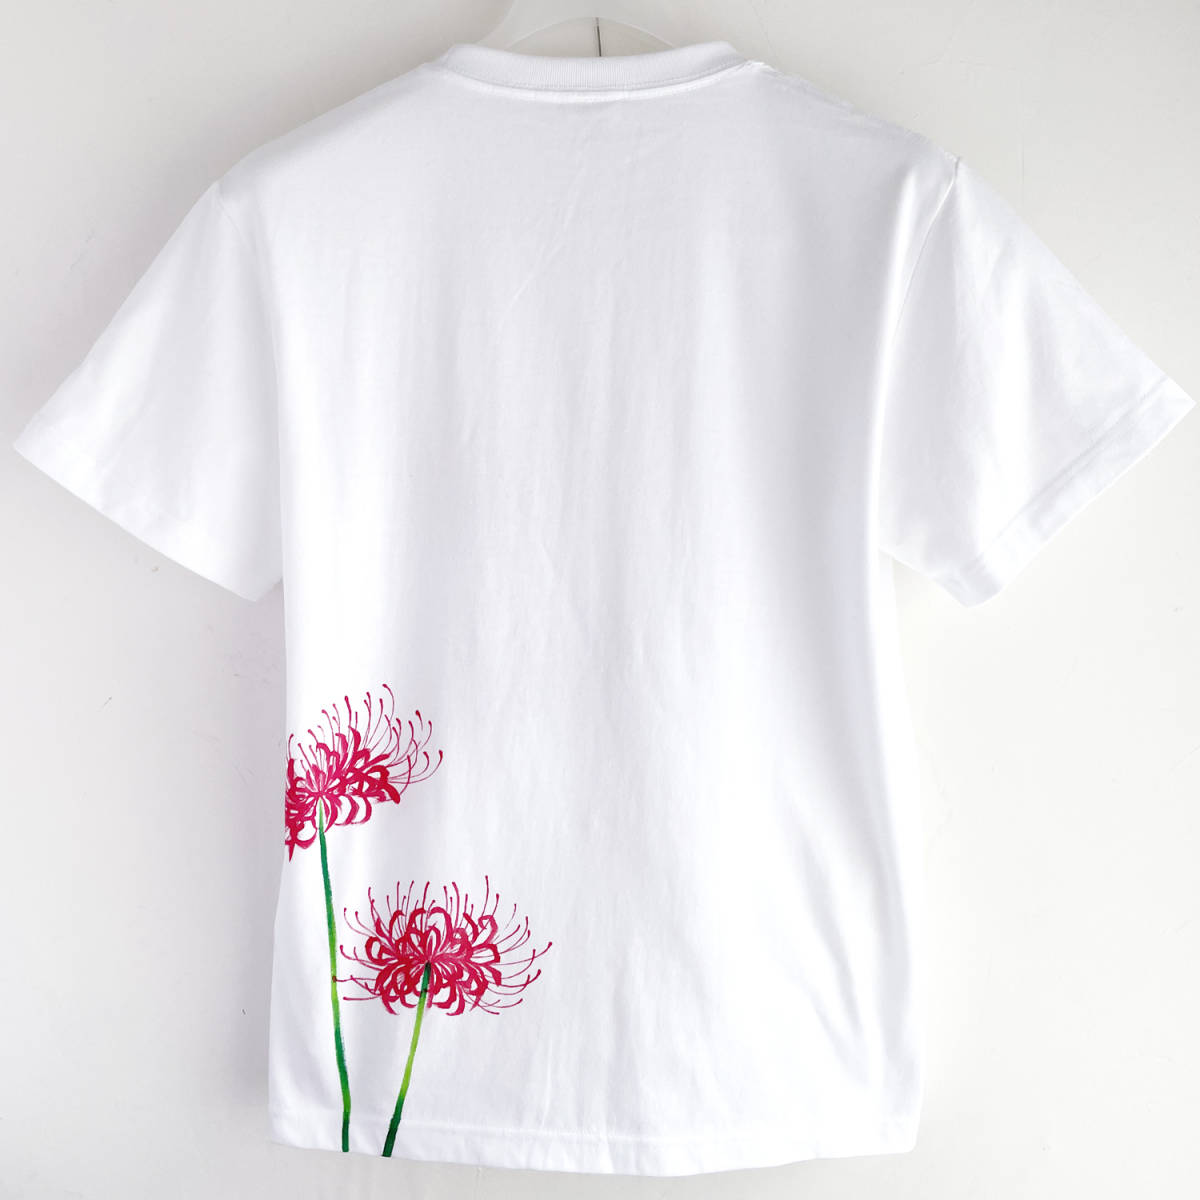 メンズ Tシャツ Mサイズ 彼岸花柄Tシャツ 白 ハンドメイド 手描きTシャツ 和柄 花柄 秋冬